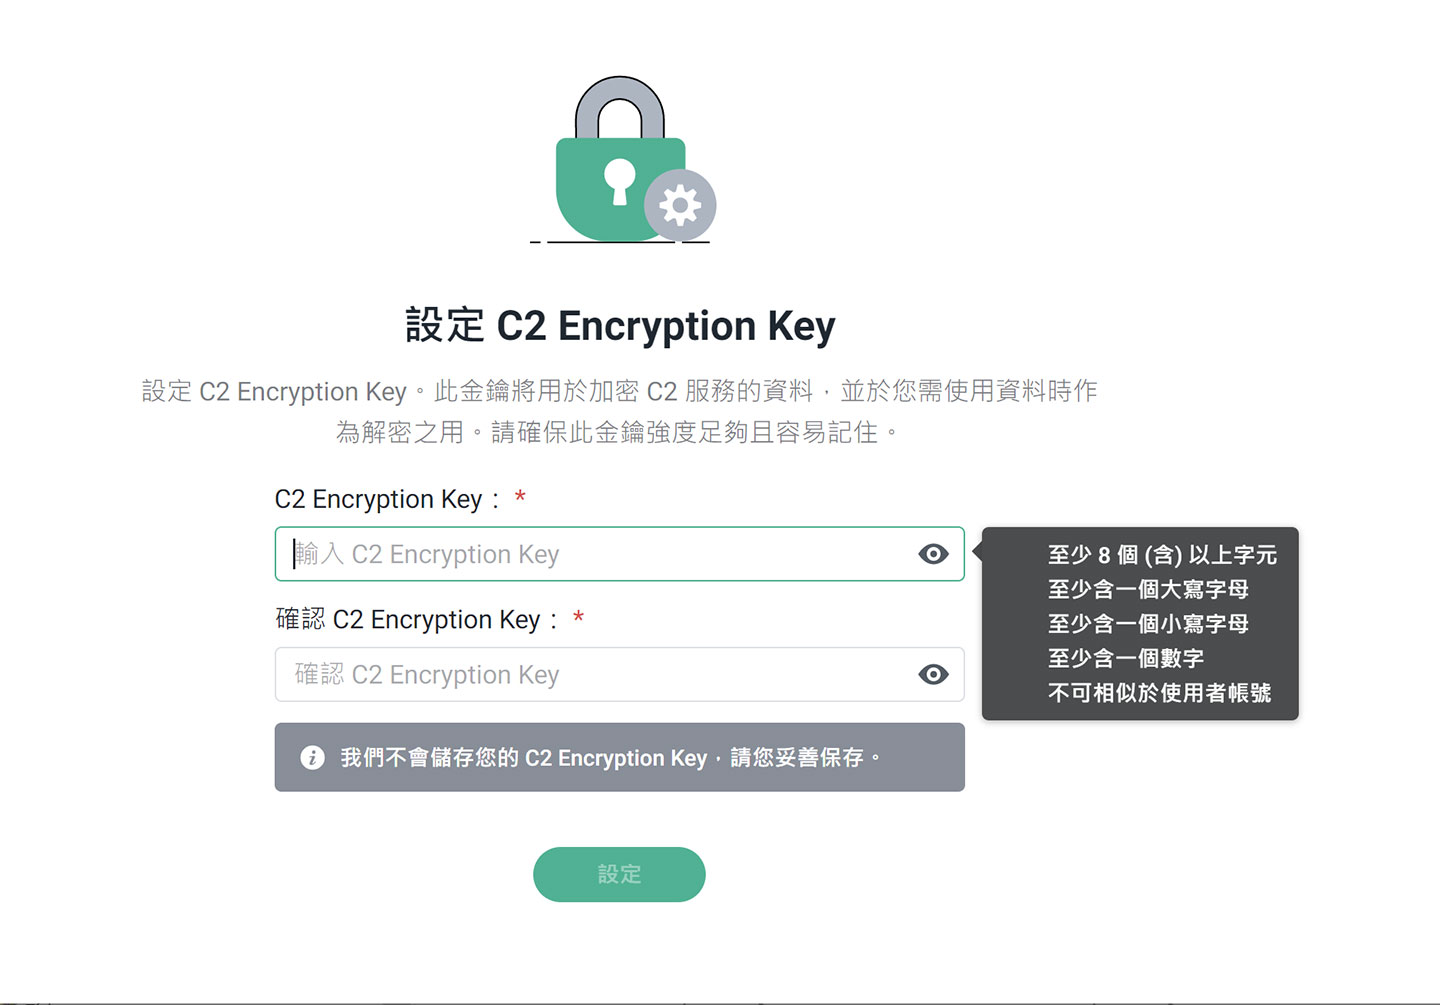 在使用 C2 Password 前，會需要額外定一組 C2 Encryption Key 安全金鑰，之後取服務會需要使用，定原則會限定 8 個以上元，並至少包括一個大寫母、一個小寫母與一個數，且不可相似於使用者帳號。